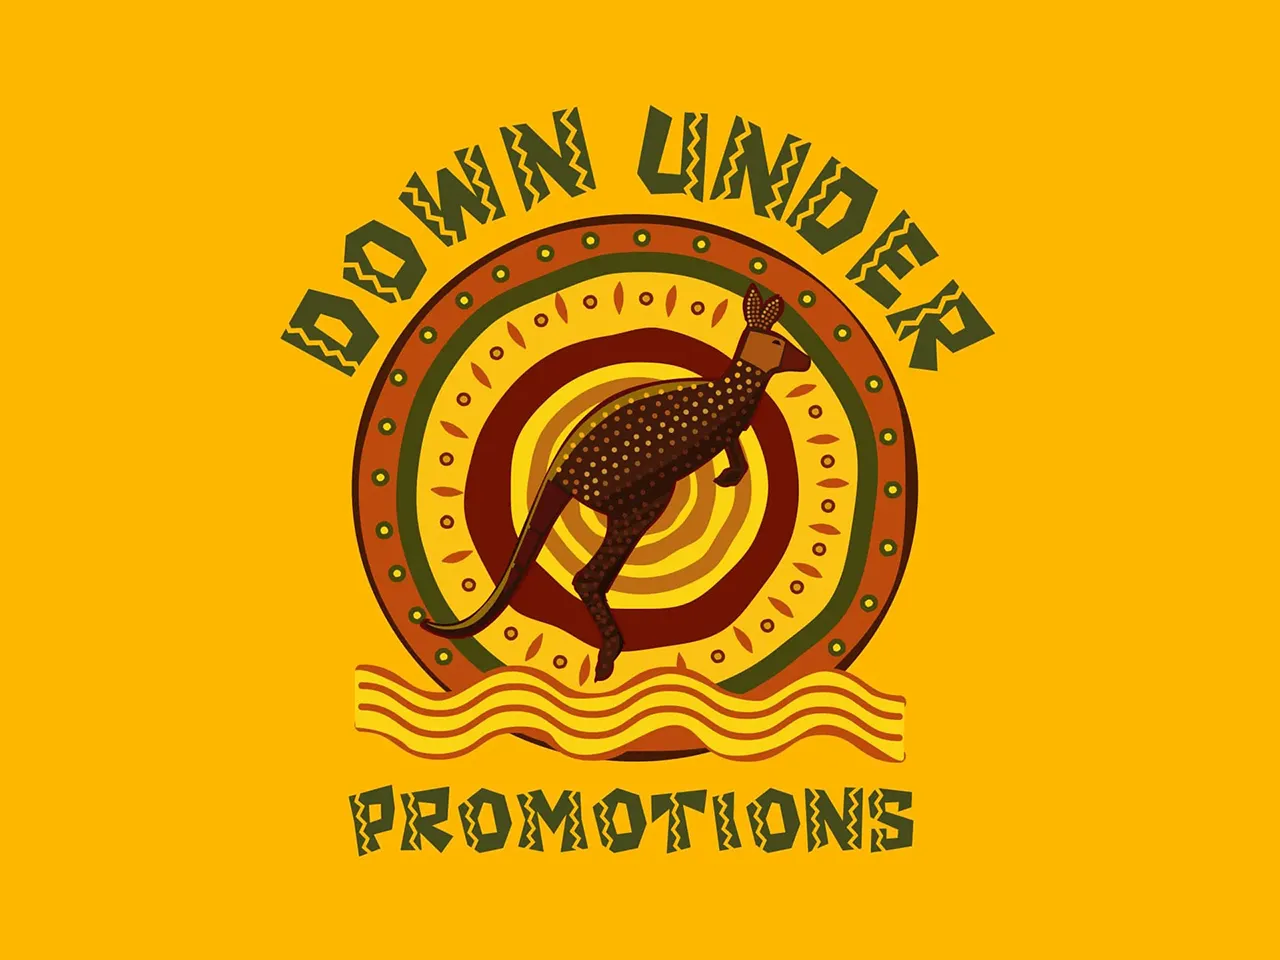 Down Under Promos logo kangaroo